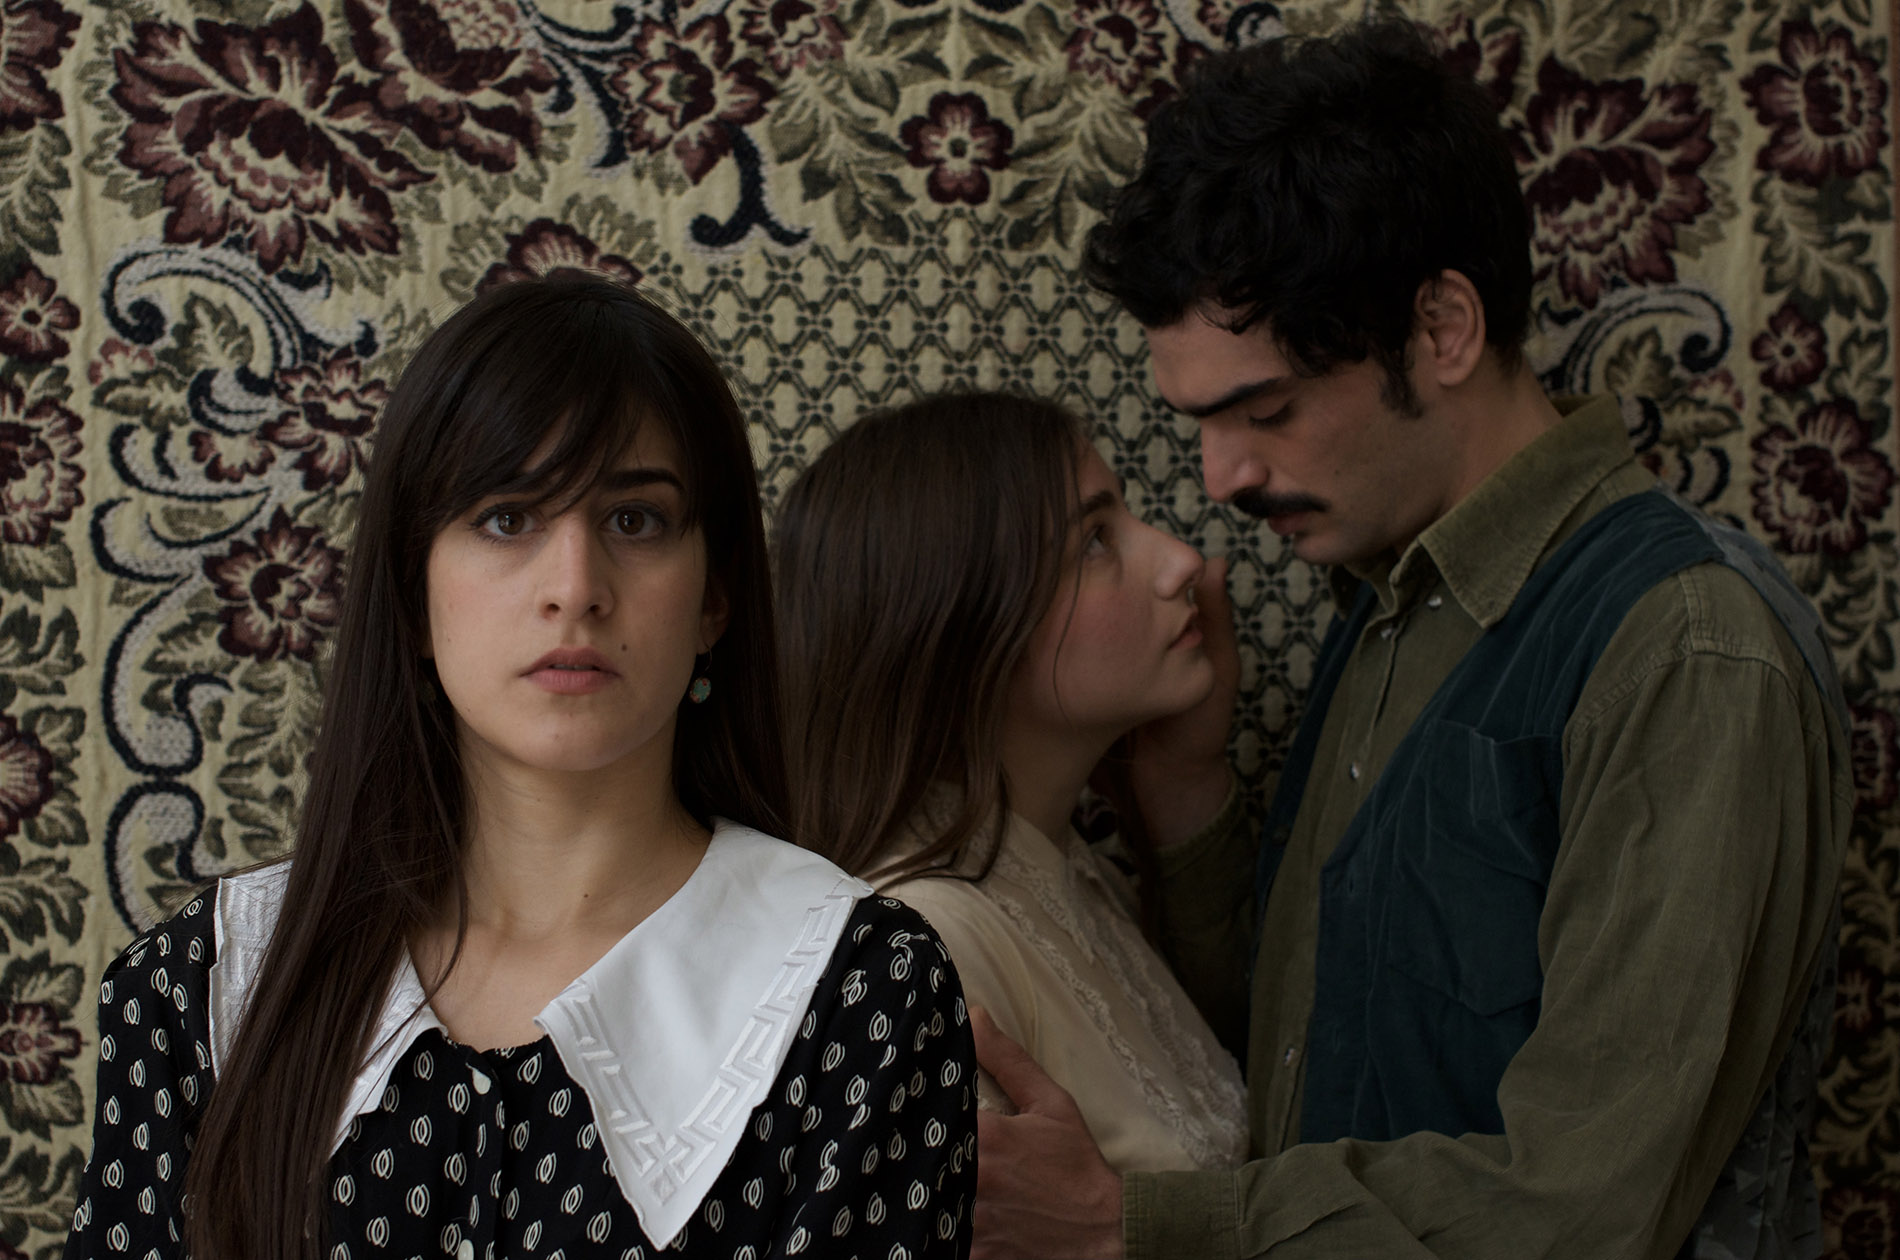 Τα τρία φιλιά… Η Σταχτιά γυναίκα, δύο θεατρικά έργα του Κωνσταντίνου Χρηστομάνου στο θέατρο Μεταξουργείο